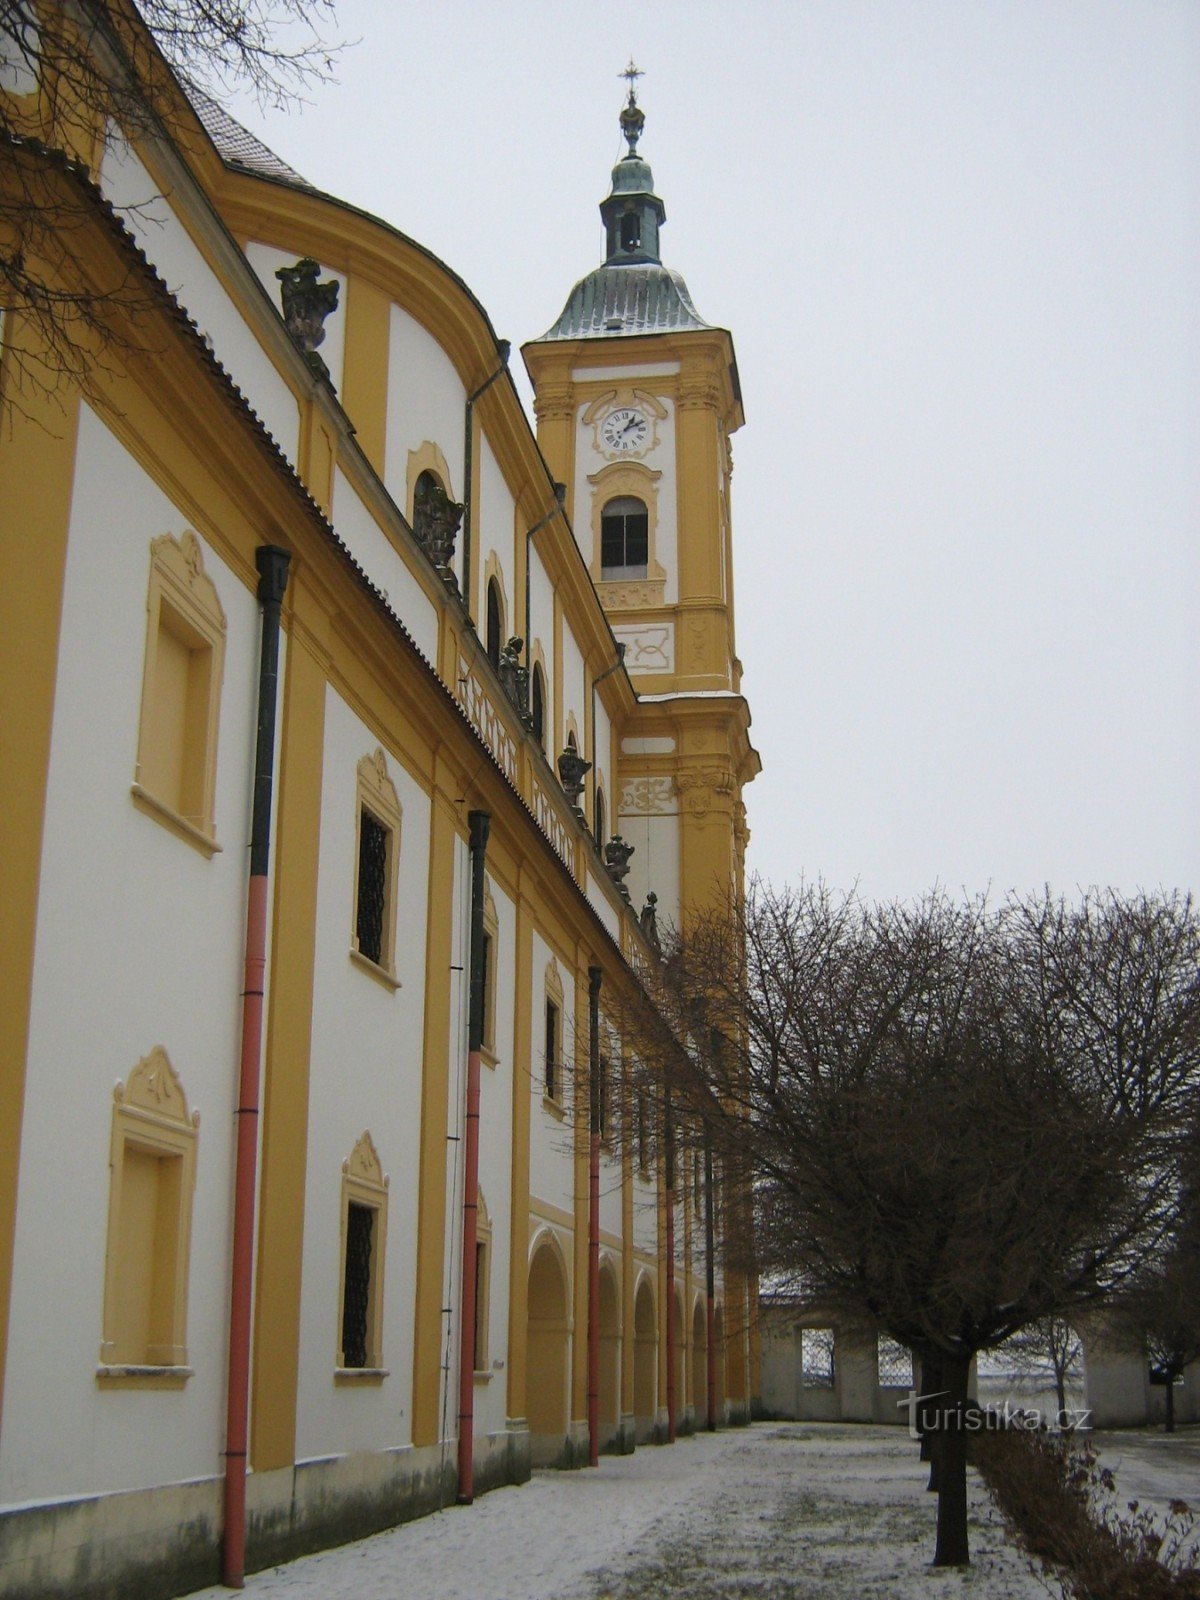 Dub nad Moravou - église de pèlerinage de la Purification de la Vierge Marie